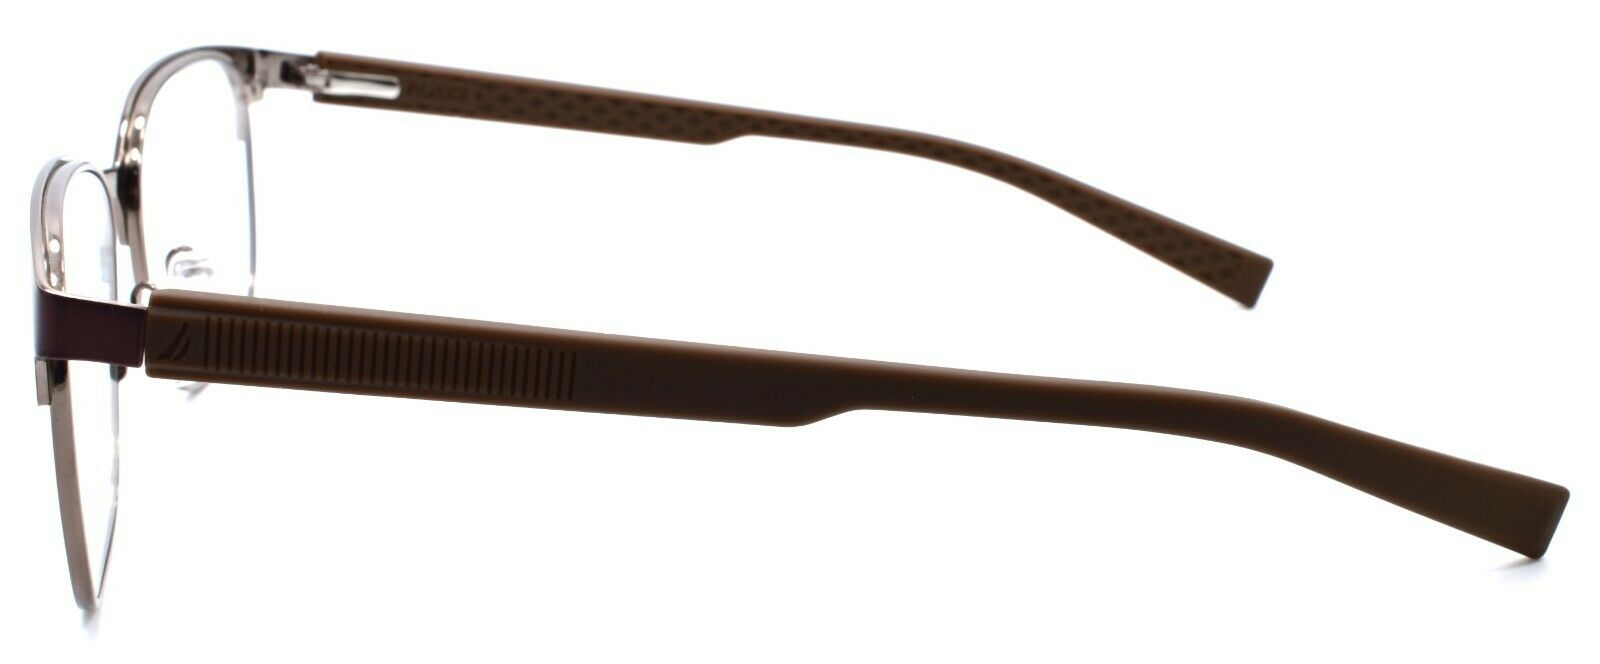 3-Nautica N7293 210 Men's Eyeglasses Frames 53-17-140 Matte Brown-688940461848-IKSpecs